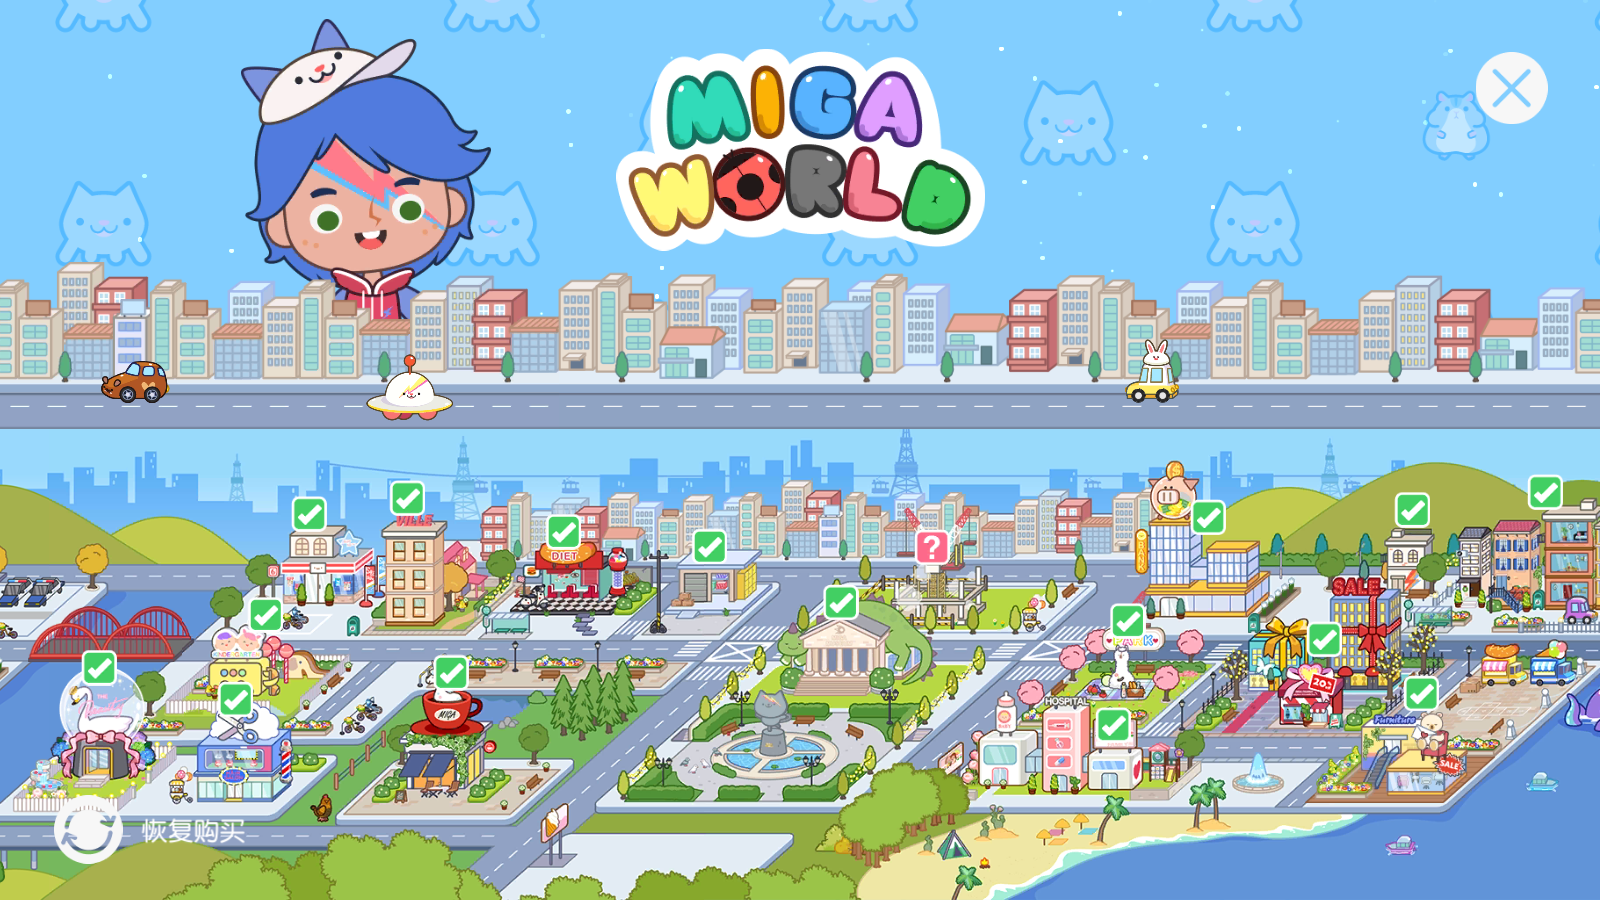 米加小镇世界(Miga World)完整版最新版